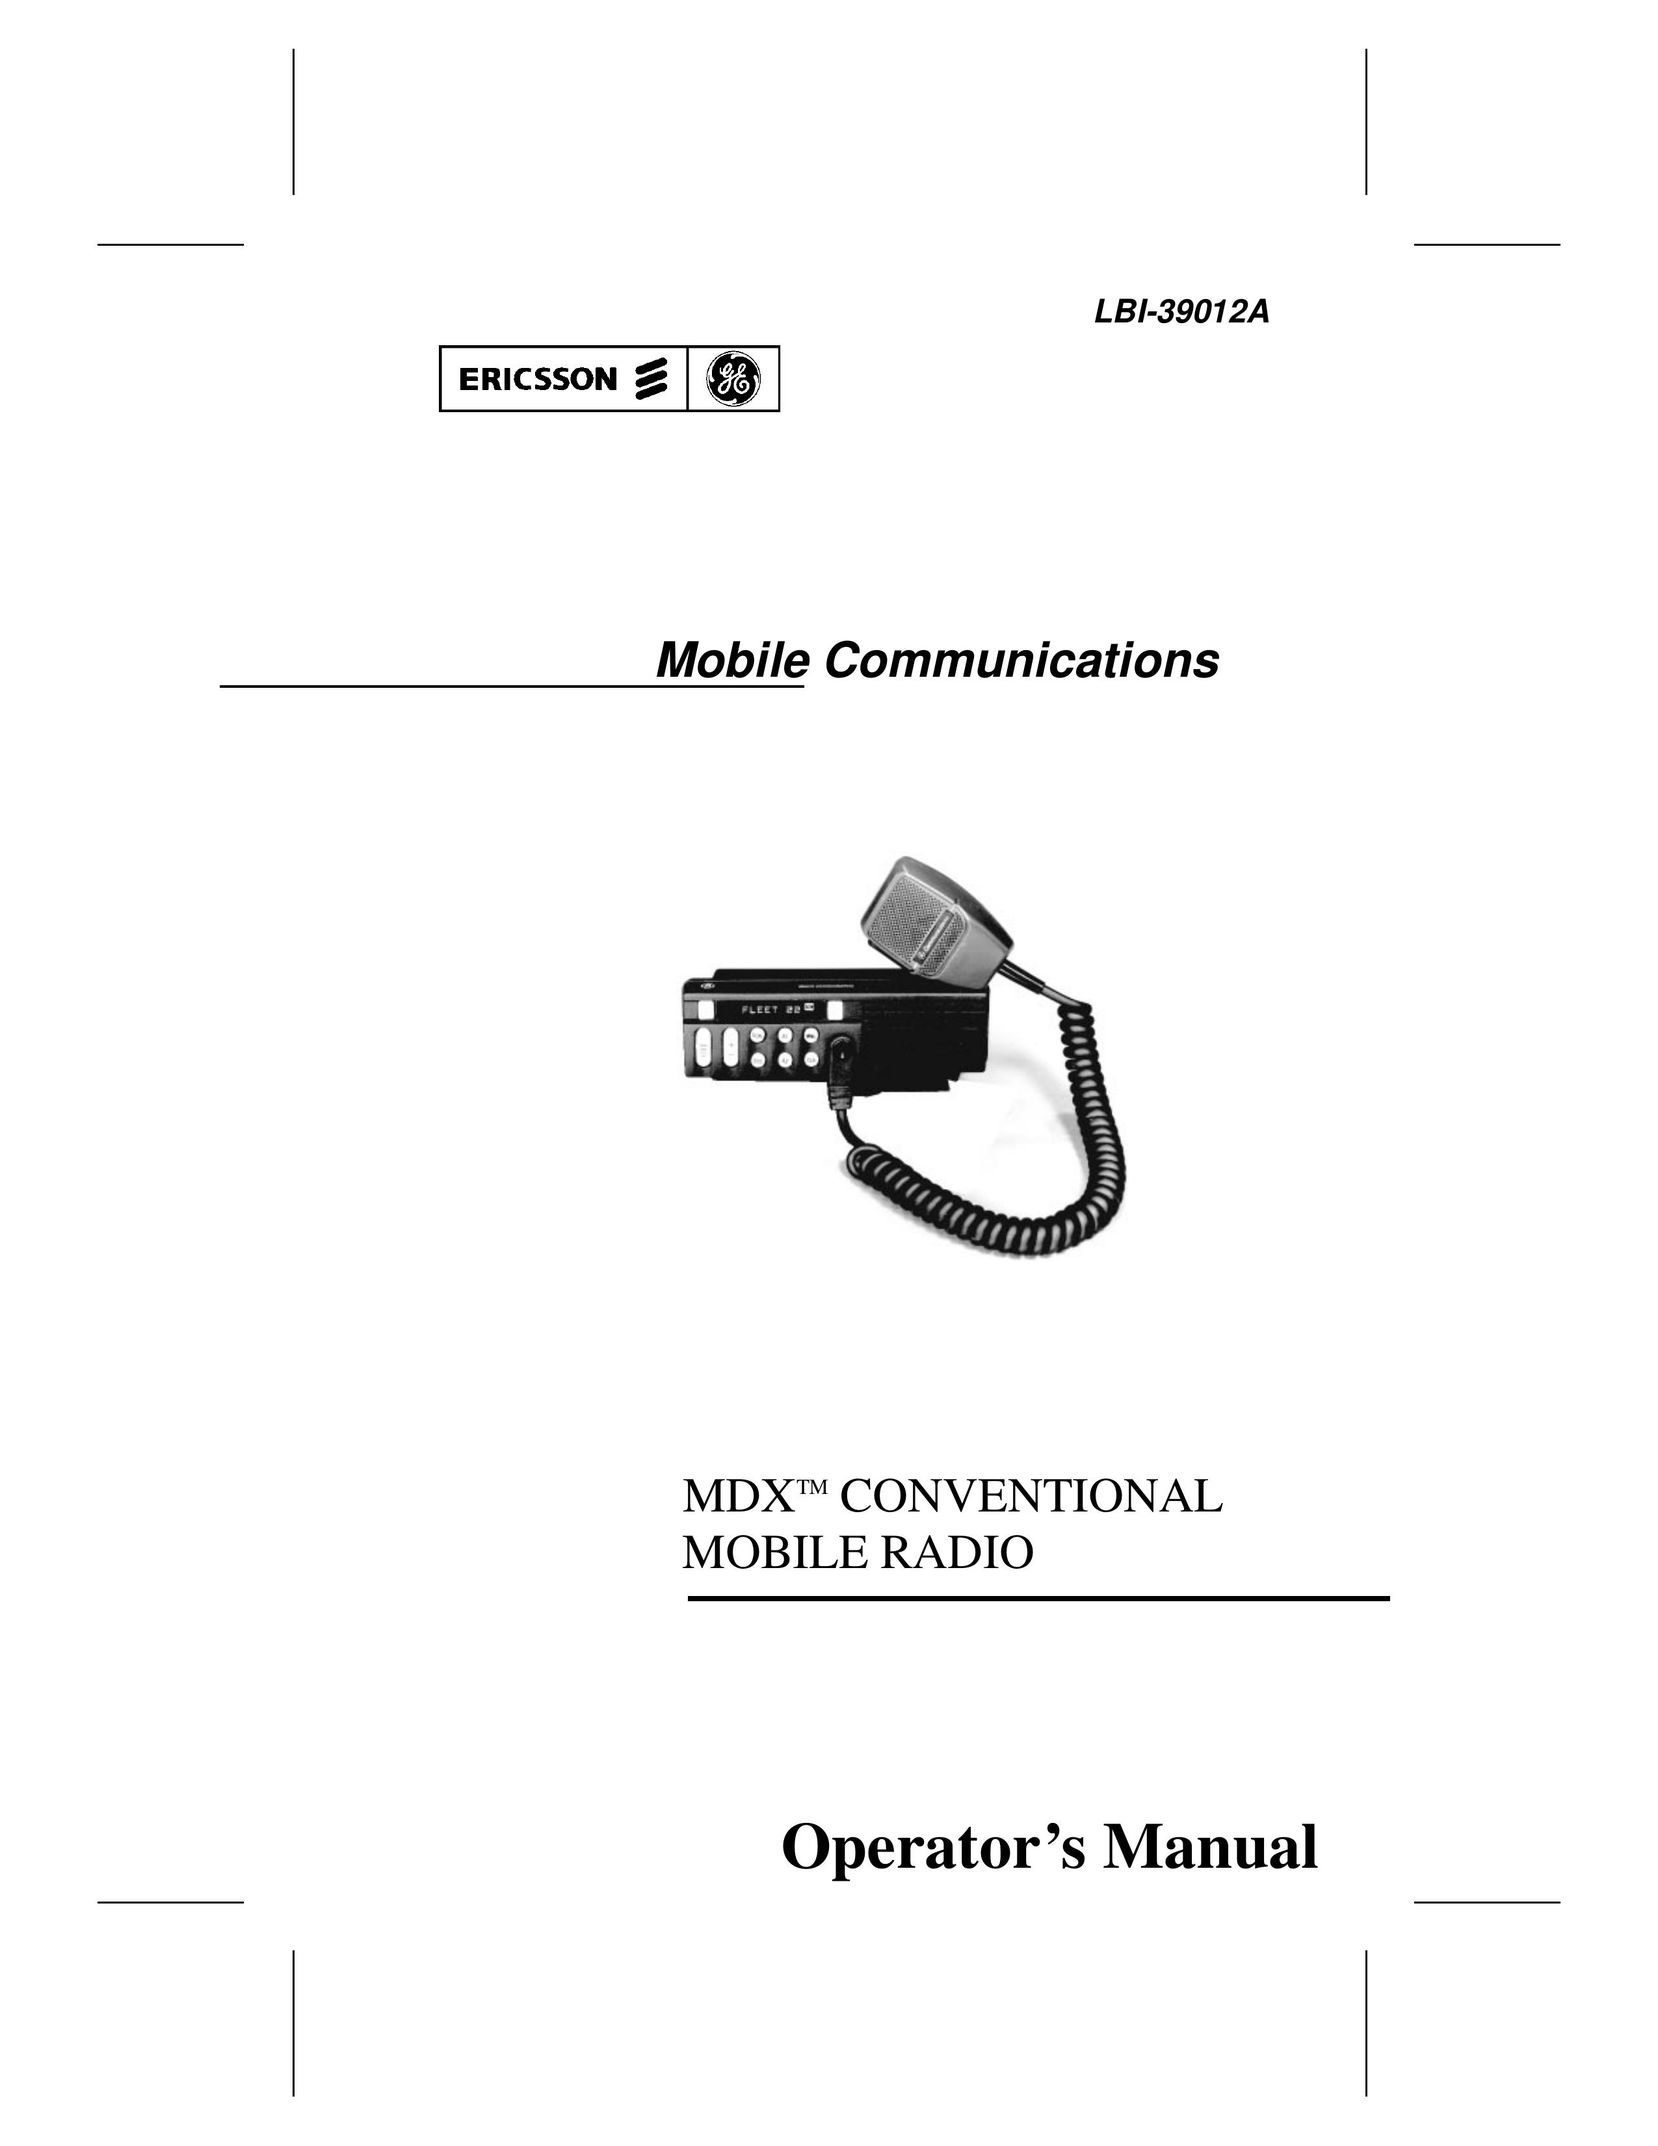 Ericsson LBI-39012A Two-Way Radio User Manual